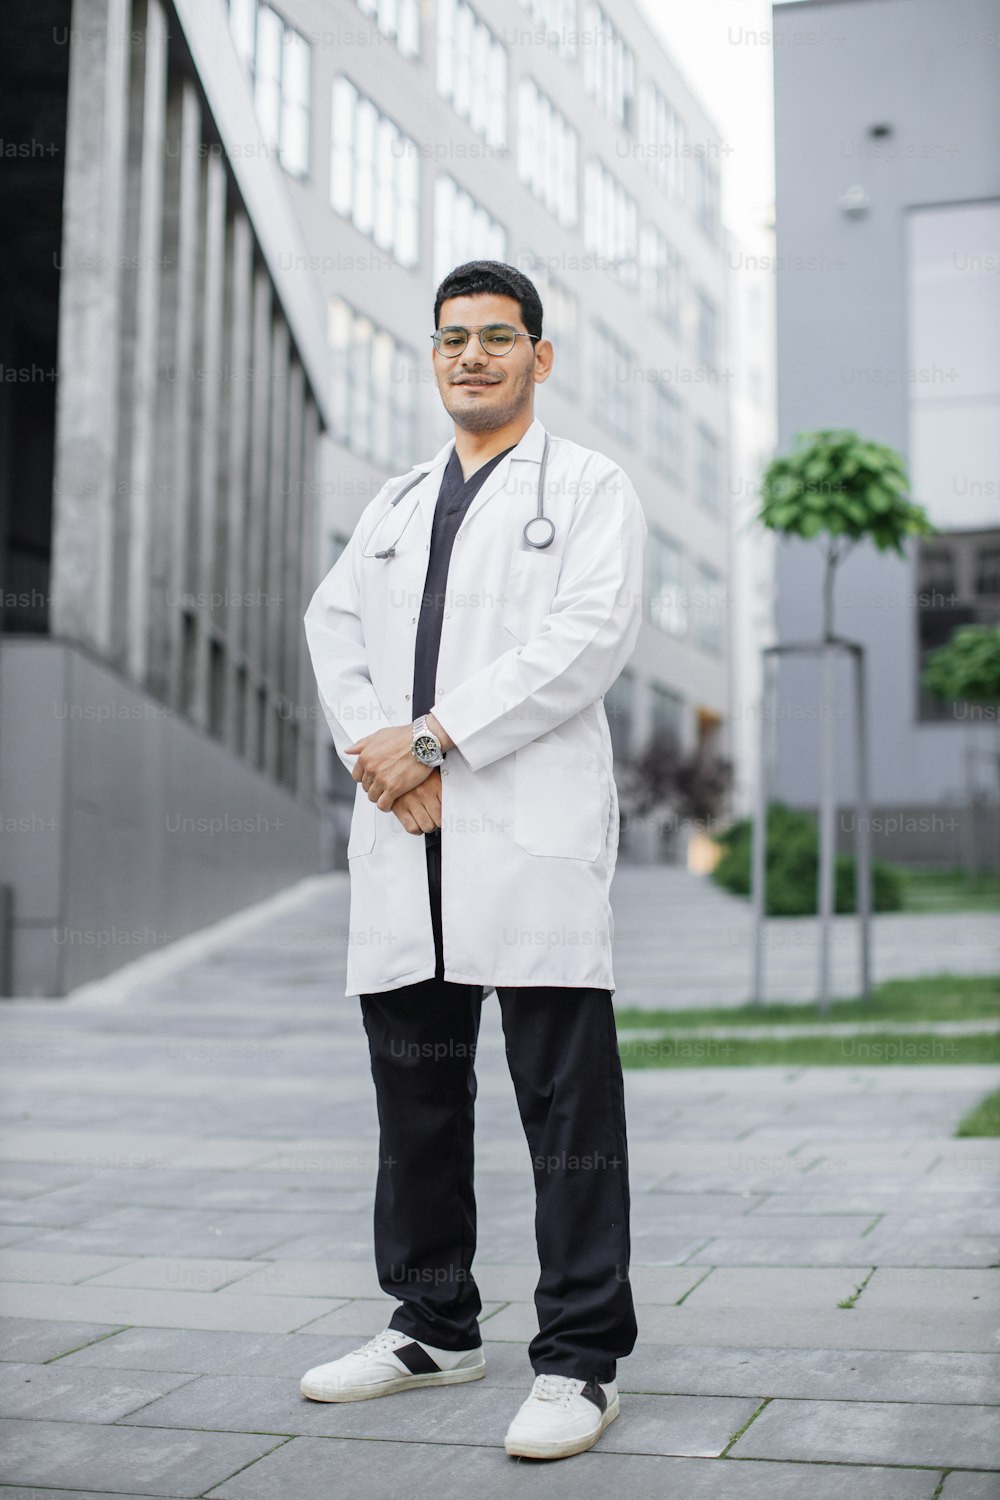 젊고 잘생긴 사우디아라비아 남자 의사가 병원 밖에서 웃고 있다. 흰색 코트를 입은 남성 의대생의 전체 길이 초상화, 현대 대학 건물이나 클리닉 앞에서 포즈